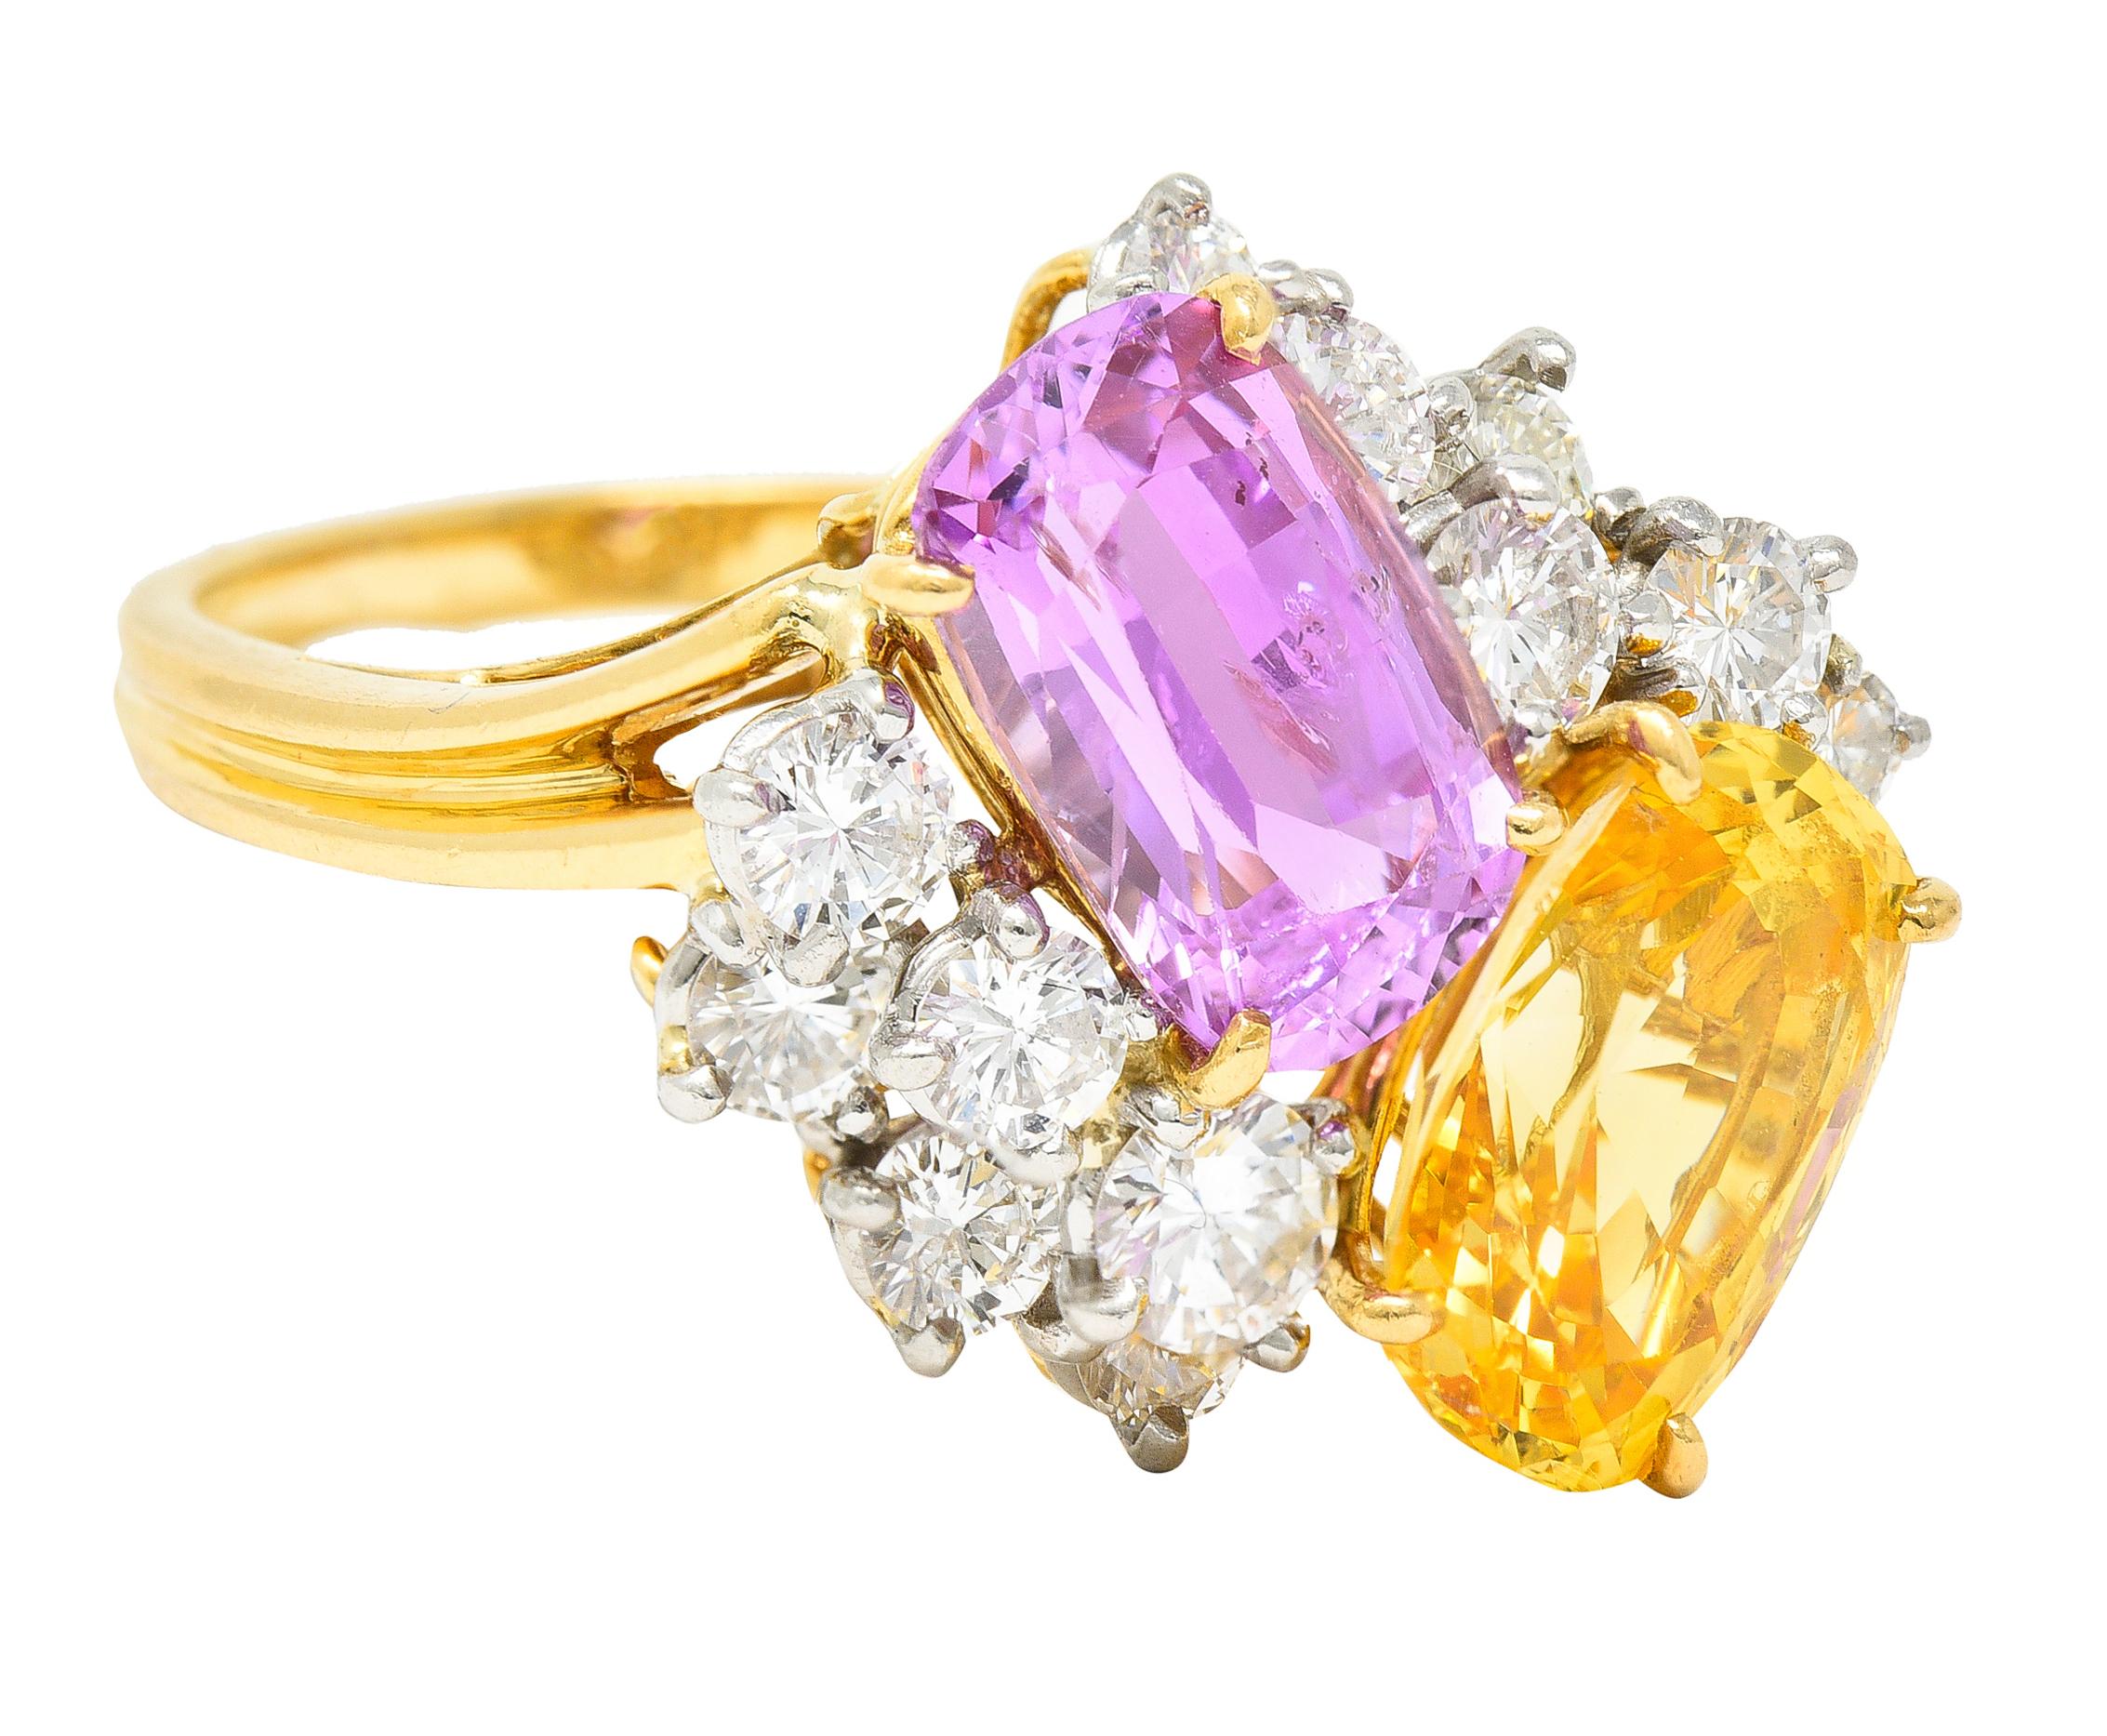 Nebeneinander liegende rosa und gelbe Saphire im Kissenschliff und runde Diamanten im Brillantschliff. Der rosafarbene Saphir ist in Zacken gefasst und wiegt insgesamt etwa 4,15 Karat - leicht violett-rosa. Der gelbe Saphir ist in Zacken gefasst und